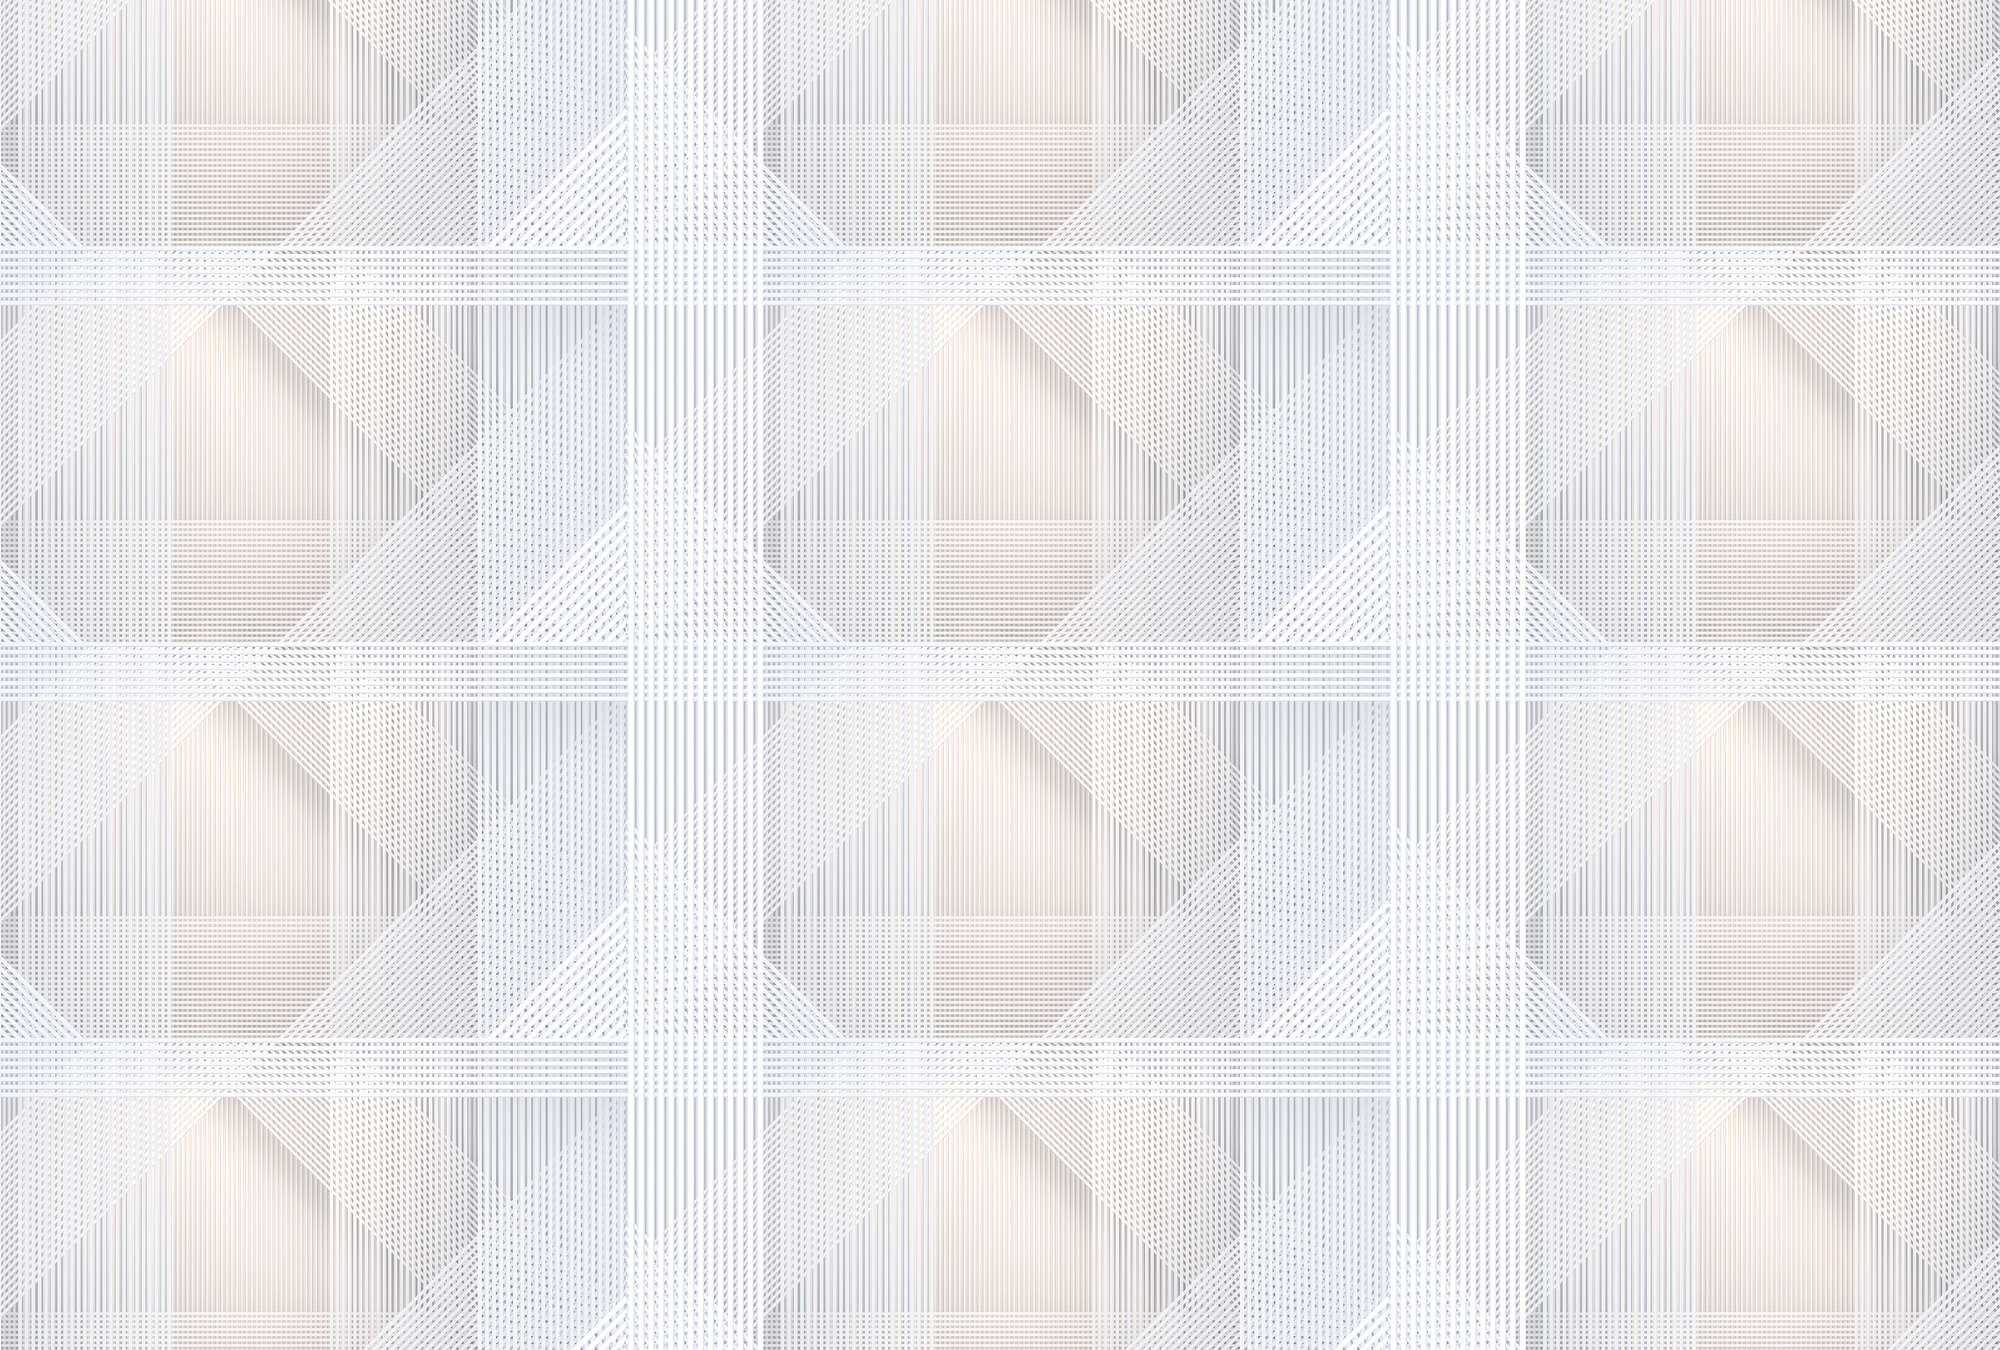             Strings 1 - Carta da parati a righe geometriche - grigio, arancione | texture tessuto non tessuto
        